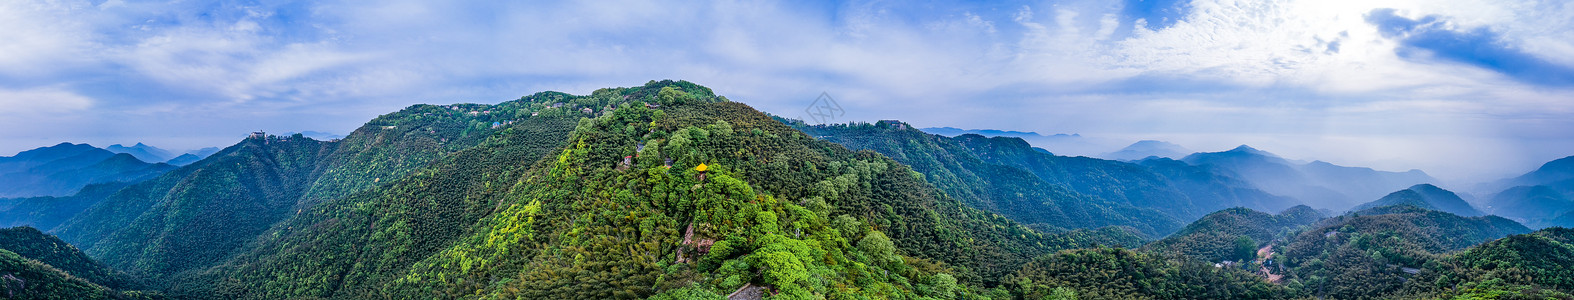 大广角莫干山顶峰全景自然风景背景